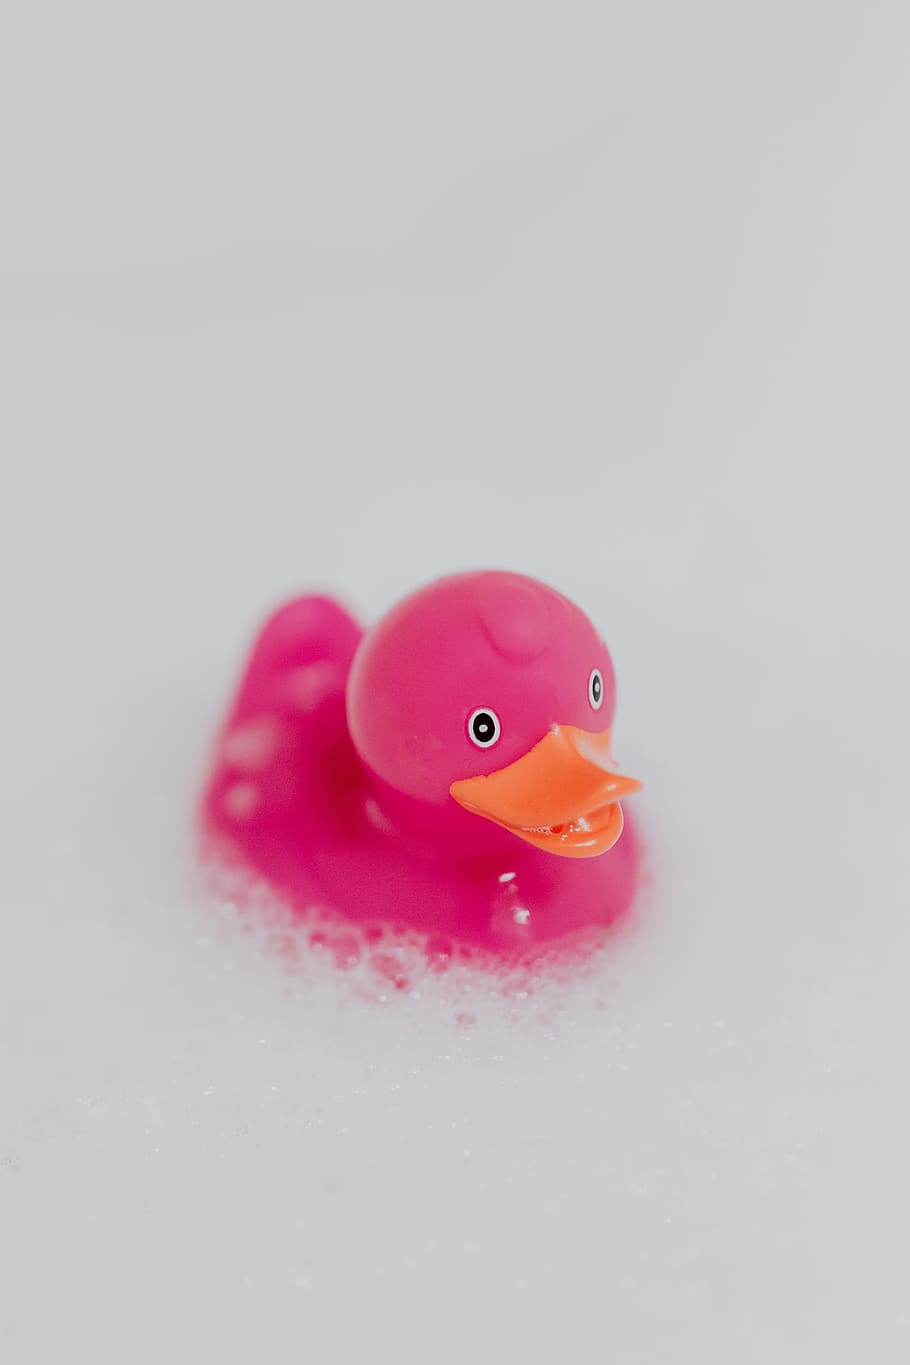 Pink rubber ducky in foam, pink duck, soap bubbles, toy, rubber toy, HD wallpaper